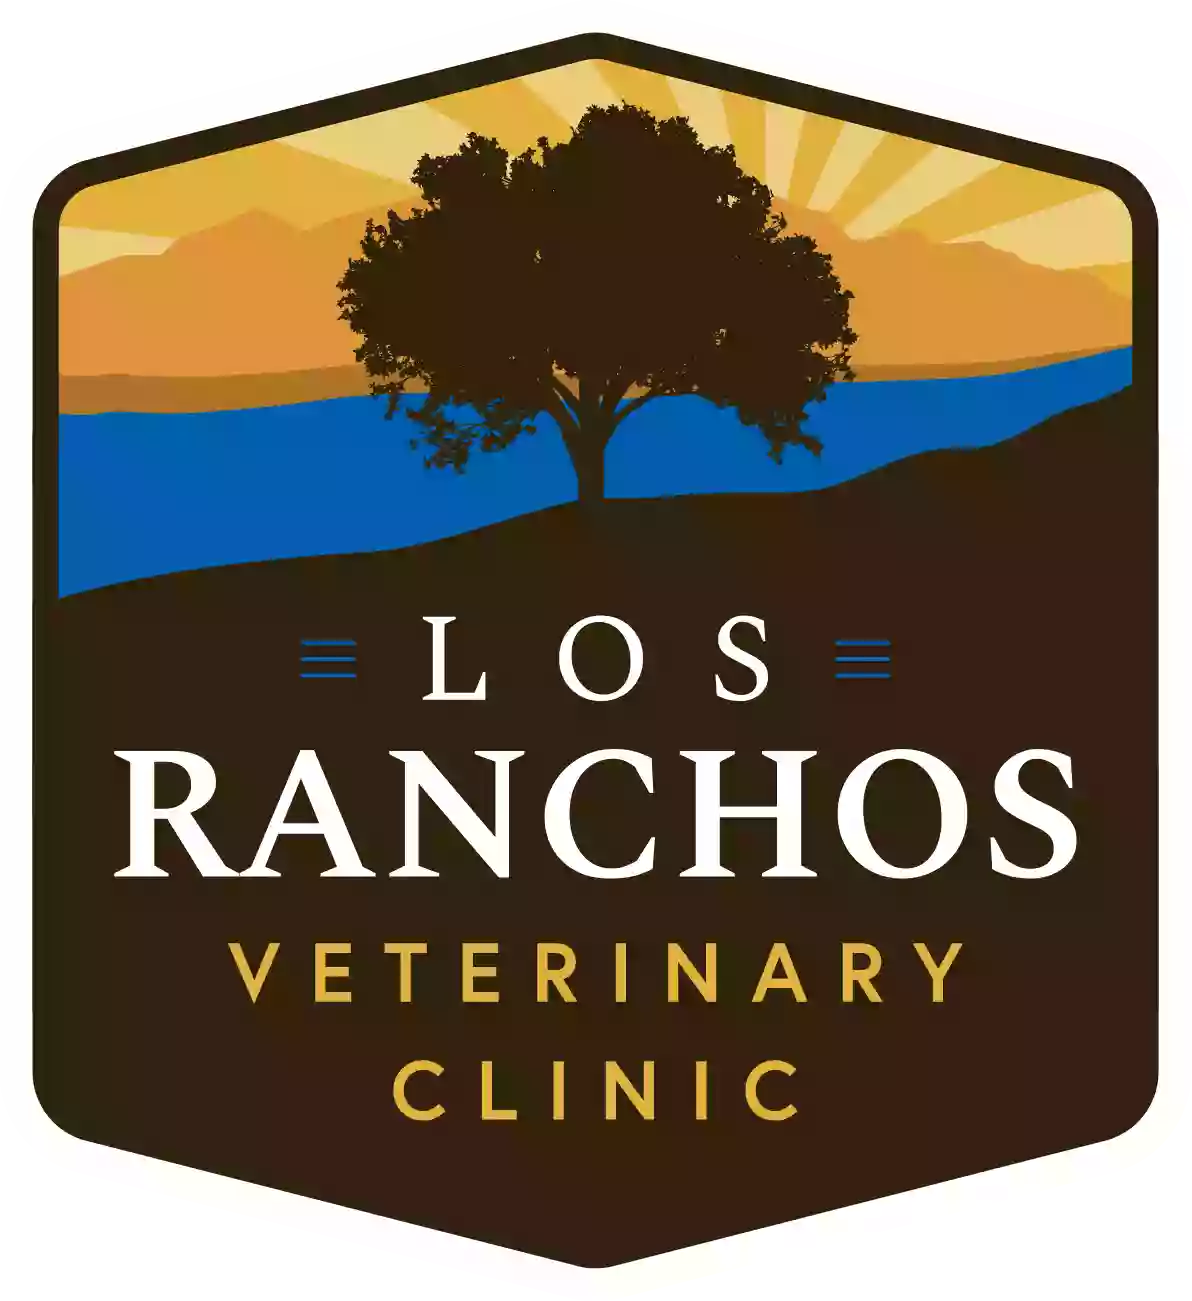 Los Ranchos Veterinary Clinic